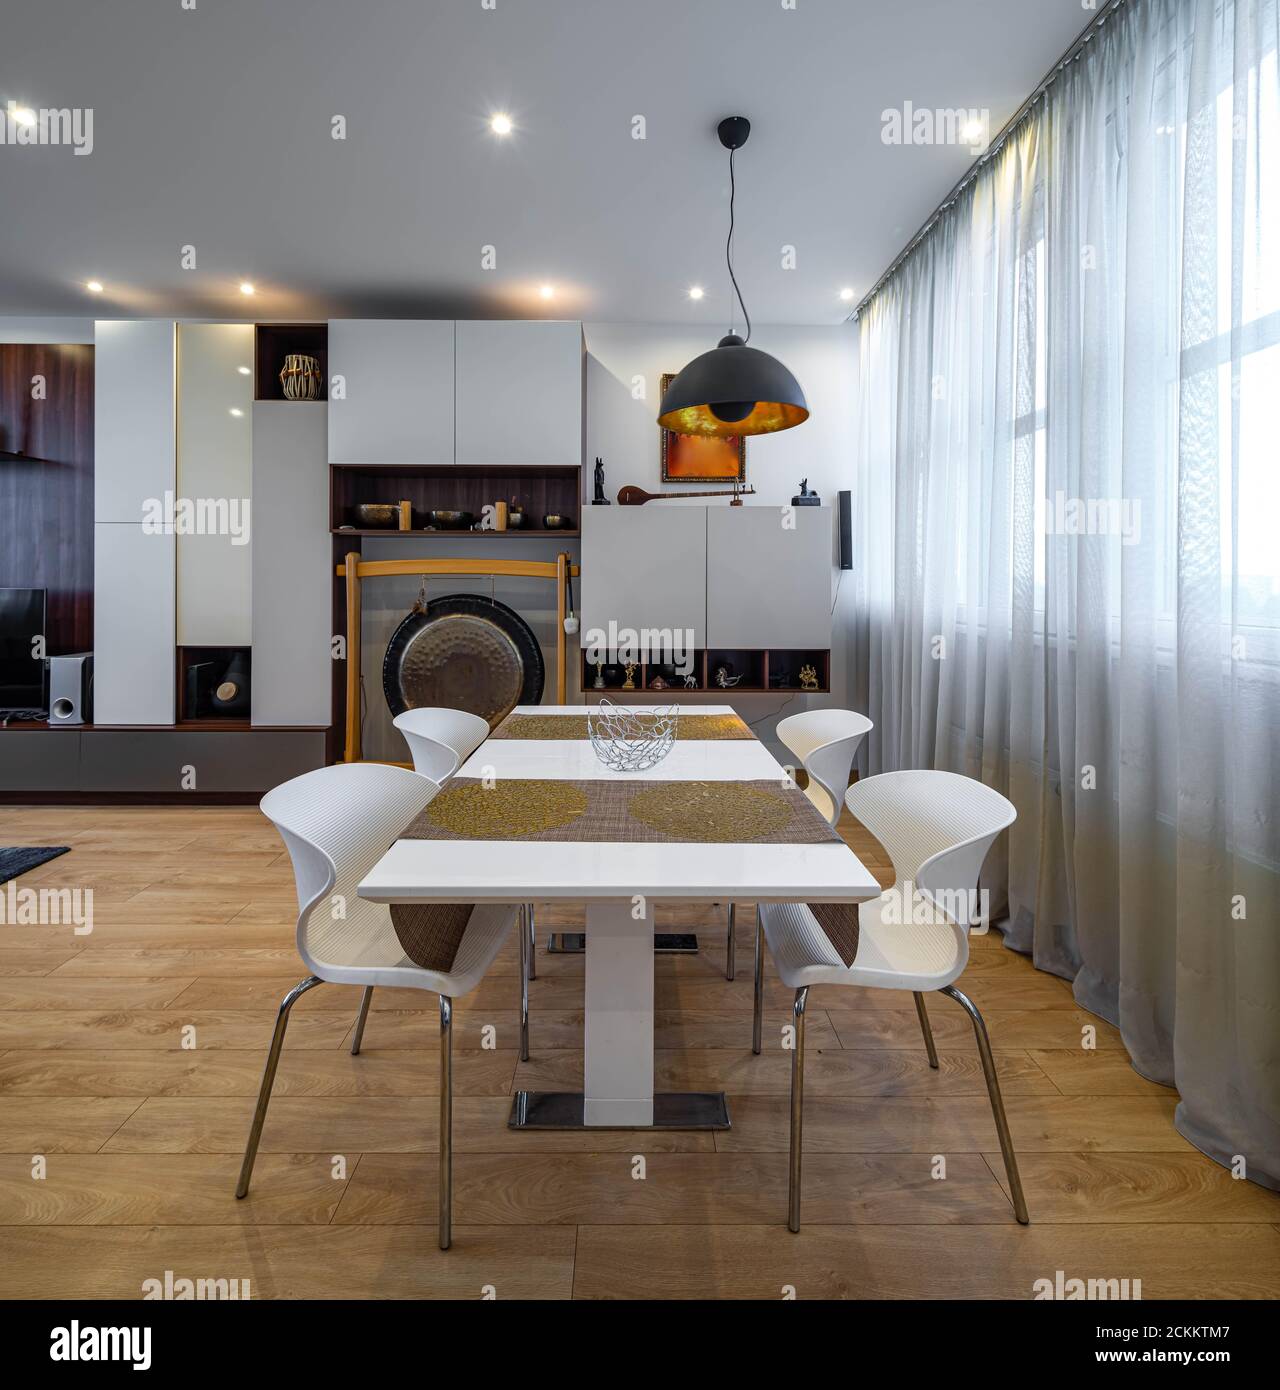 Modernes Interieur des Wohnzimmers in Luxus-Wohnung. Tisch und Stühle.  Inneneinrichtung. Tibetische Schalen und dekorative gong. Weiße Wandeinheit  Stockfotografie - Alamy